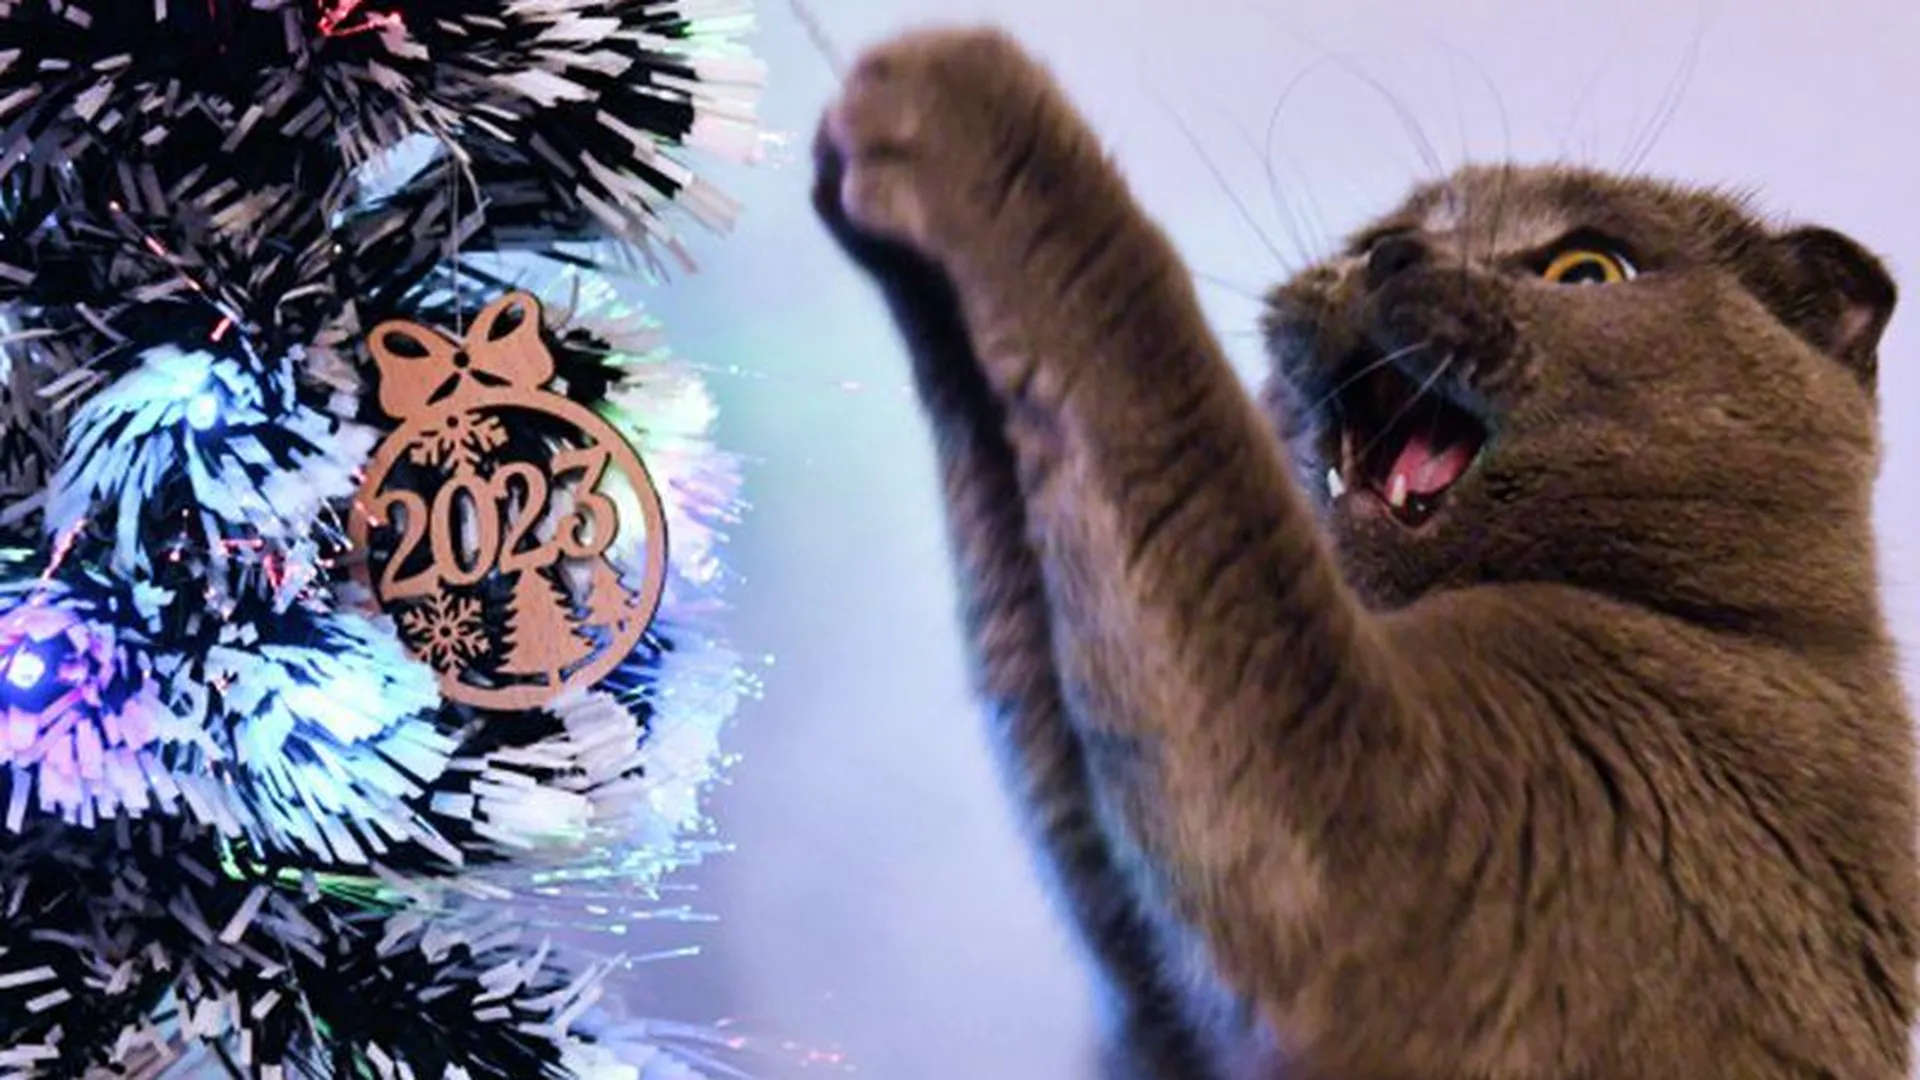 Сосновые шишки, спреи, громкие хлопки: как защитить новогоднюю елку от нападения кота